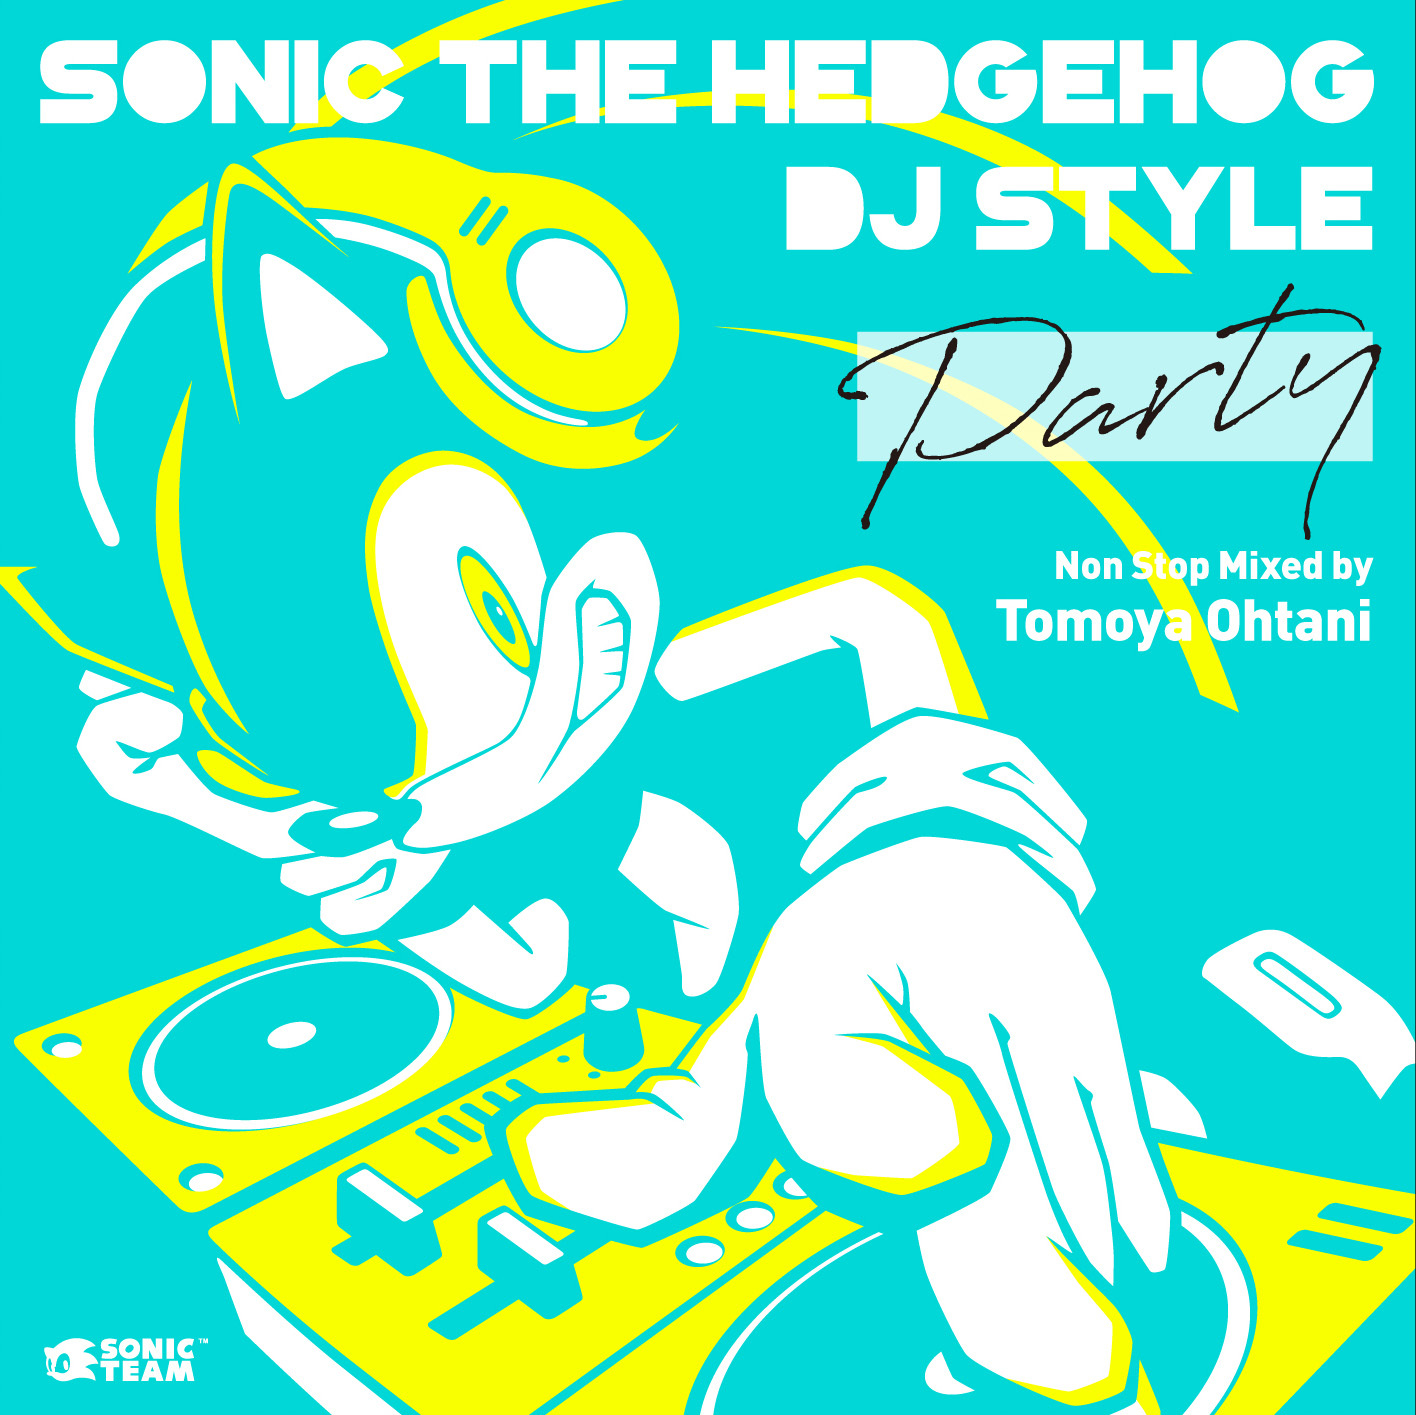 ソニック 楽曲だけ全33曲のノンストップdjミックスアルバム第1弾 Sonic The Hedgehog Dj Style Party 発売決定 Spice エンタメ特化型情報メディア スパイス